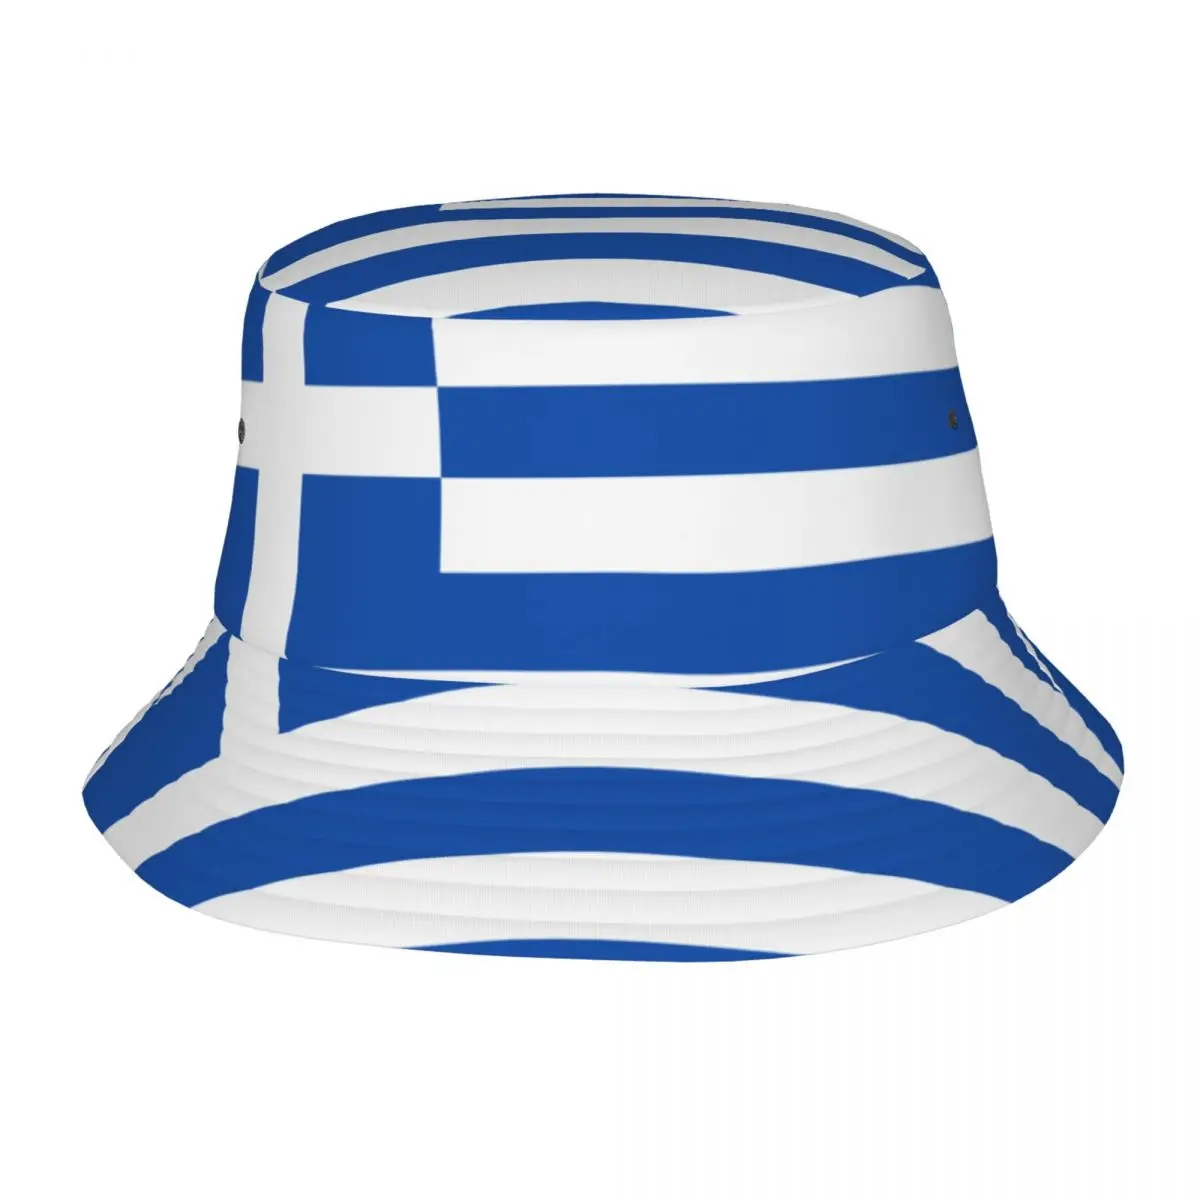 

Панама с флагом Греции, летние шляпы, рыбацкая шляпа, складные женские и мужские шляпы от солнца